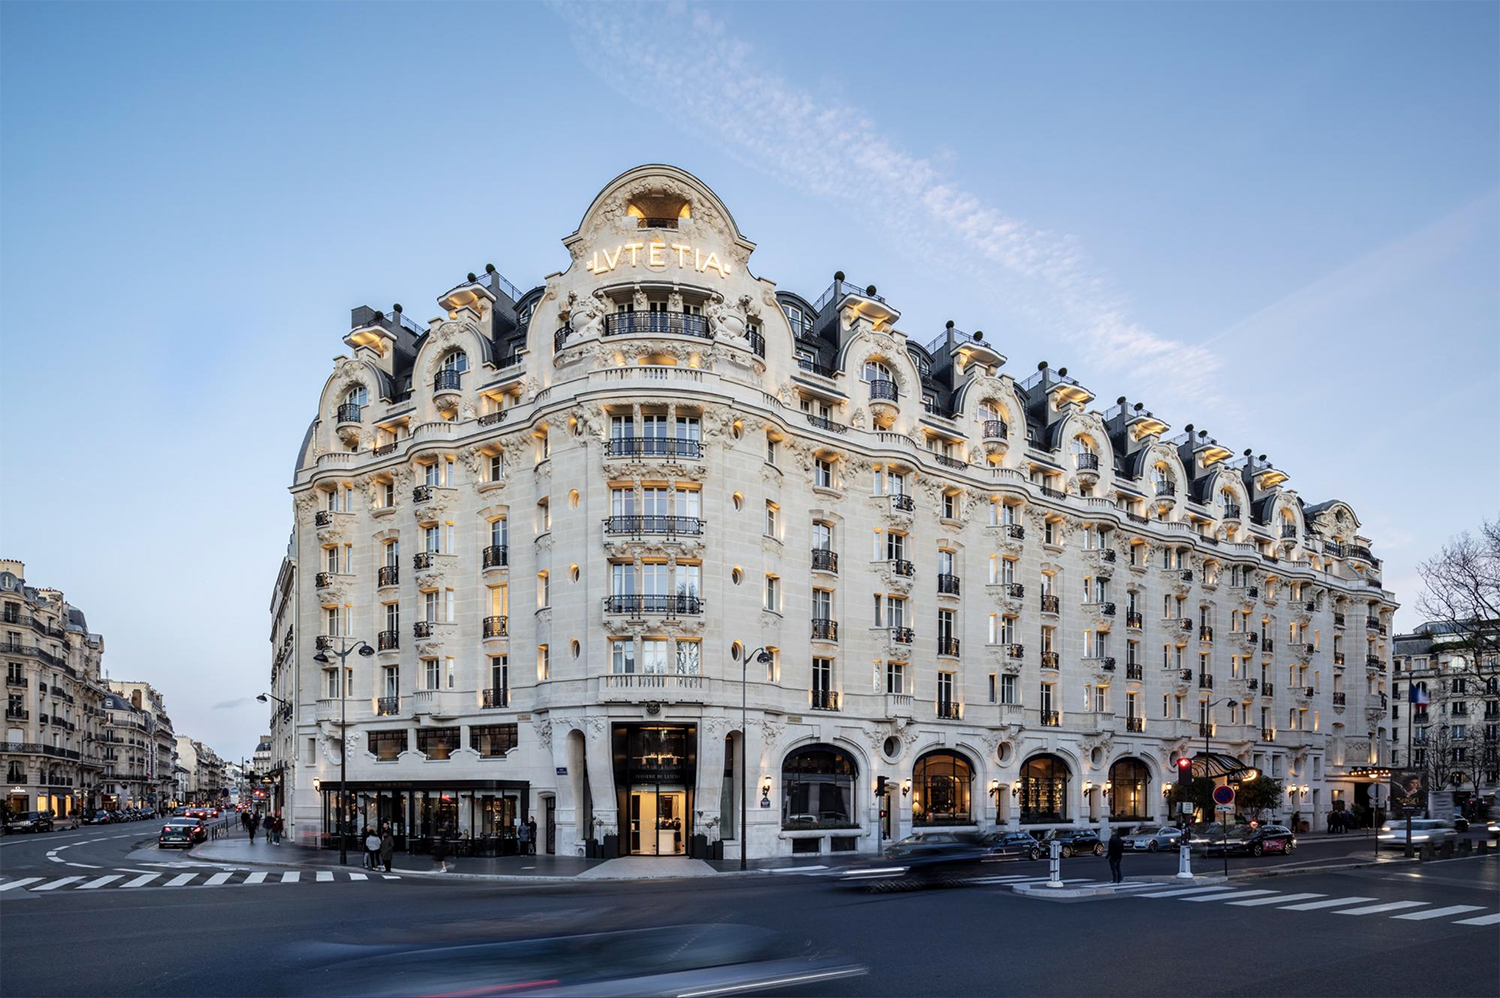 The Art Nouveau exterior of Hotel Lutetia in Paris